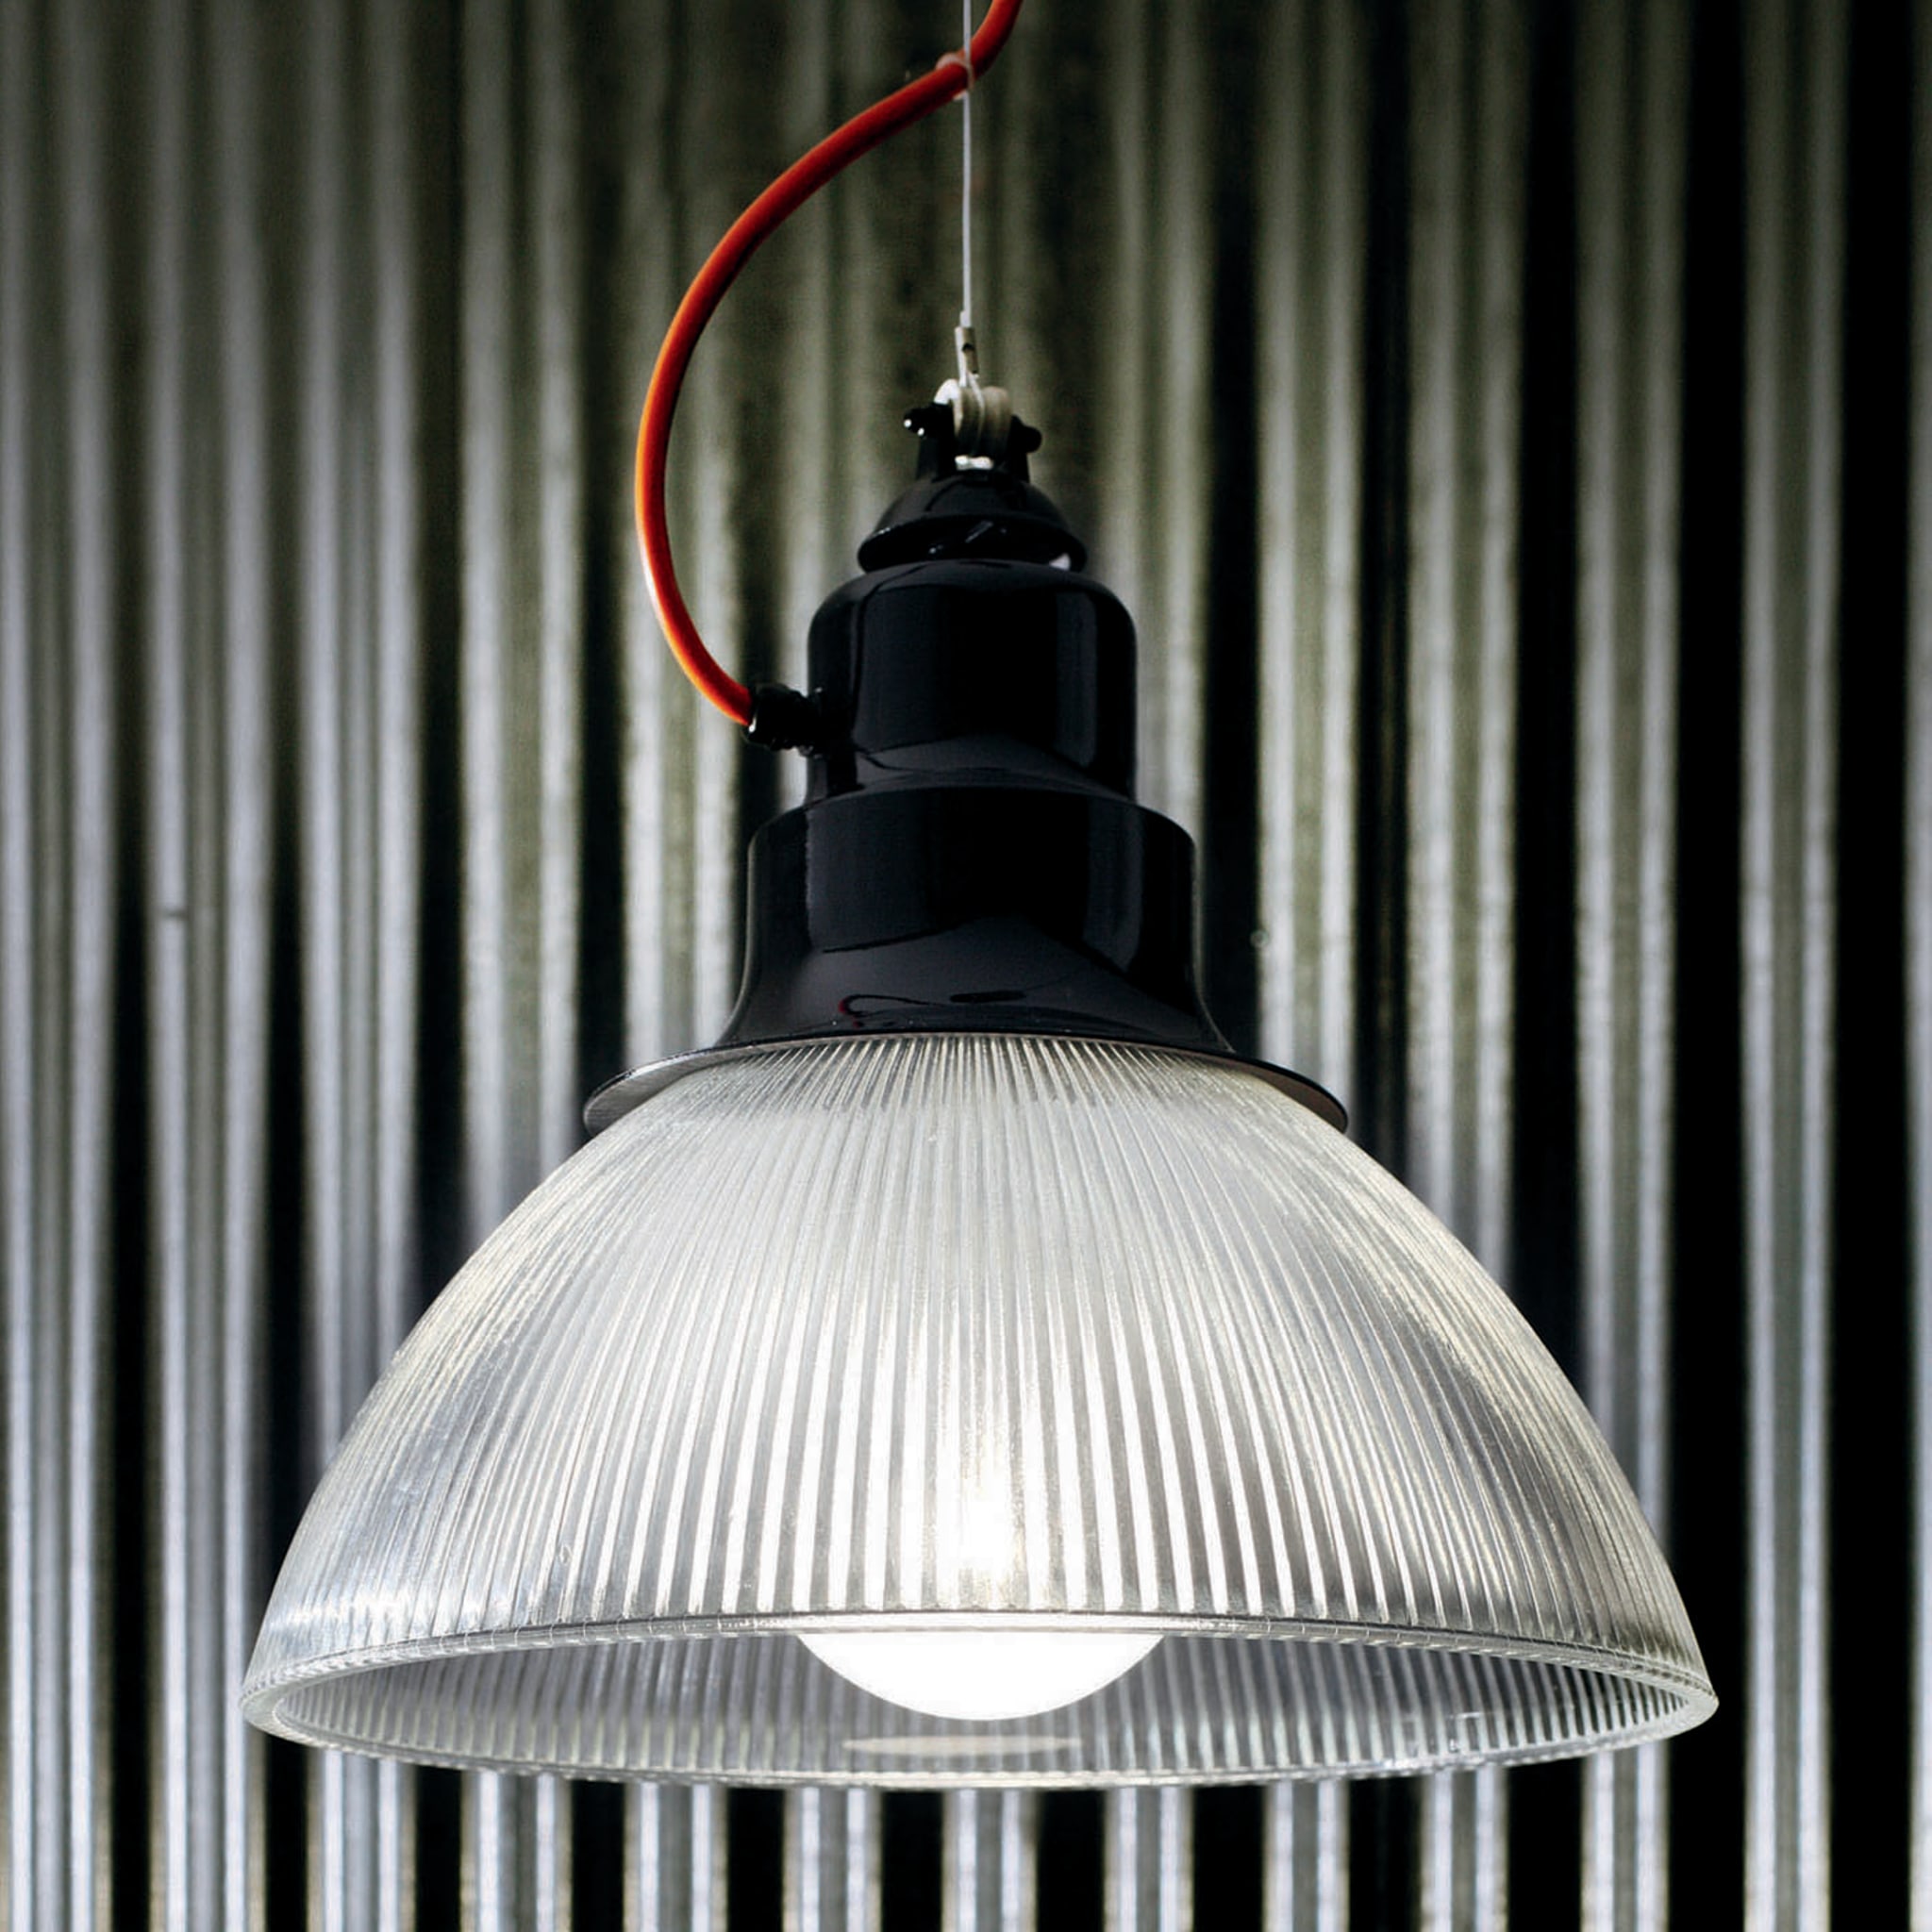 Berlino Black Pendant Lamp by Franco Zavarise - Alternative view 1